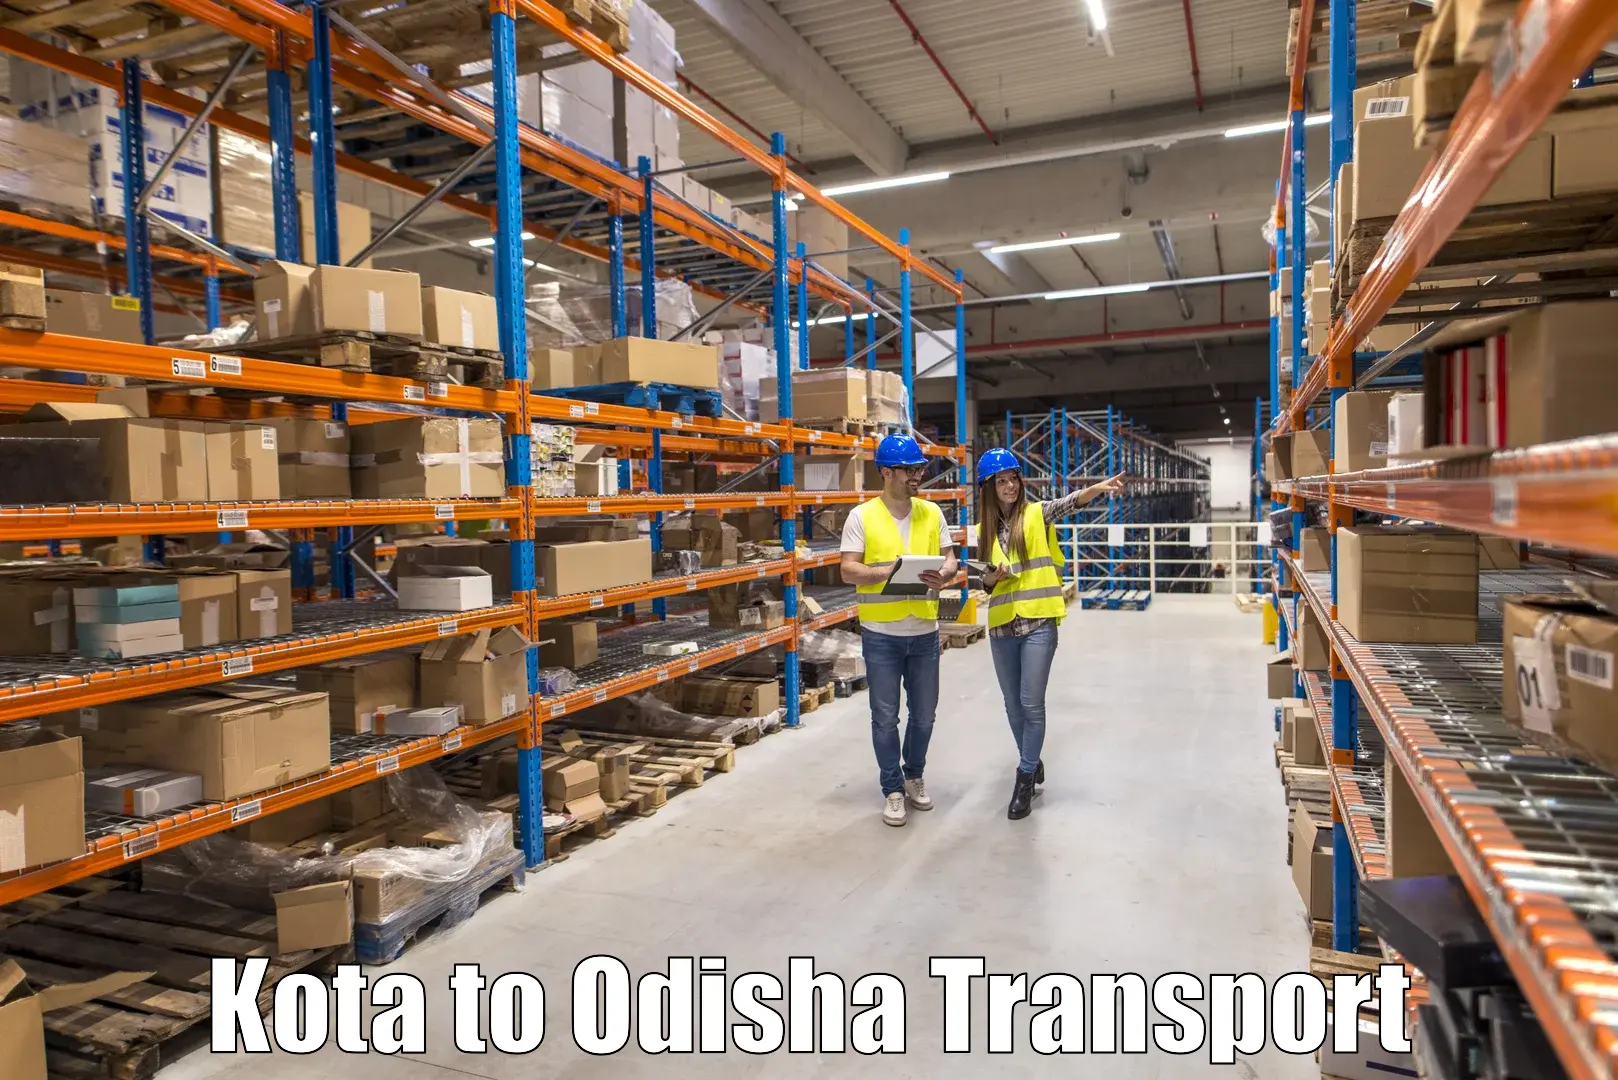 Part load transport service in India Kota to Balikuda